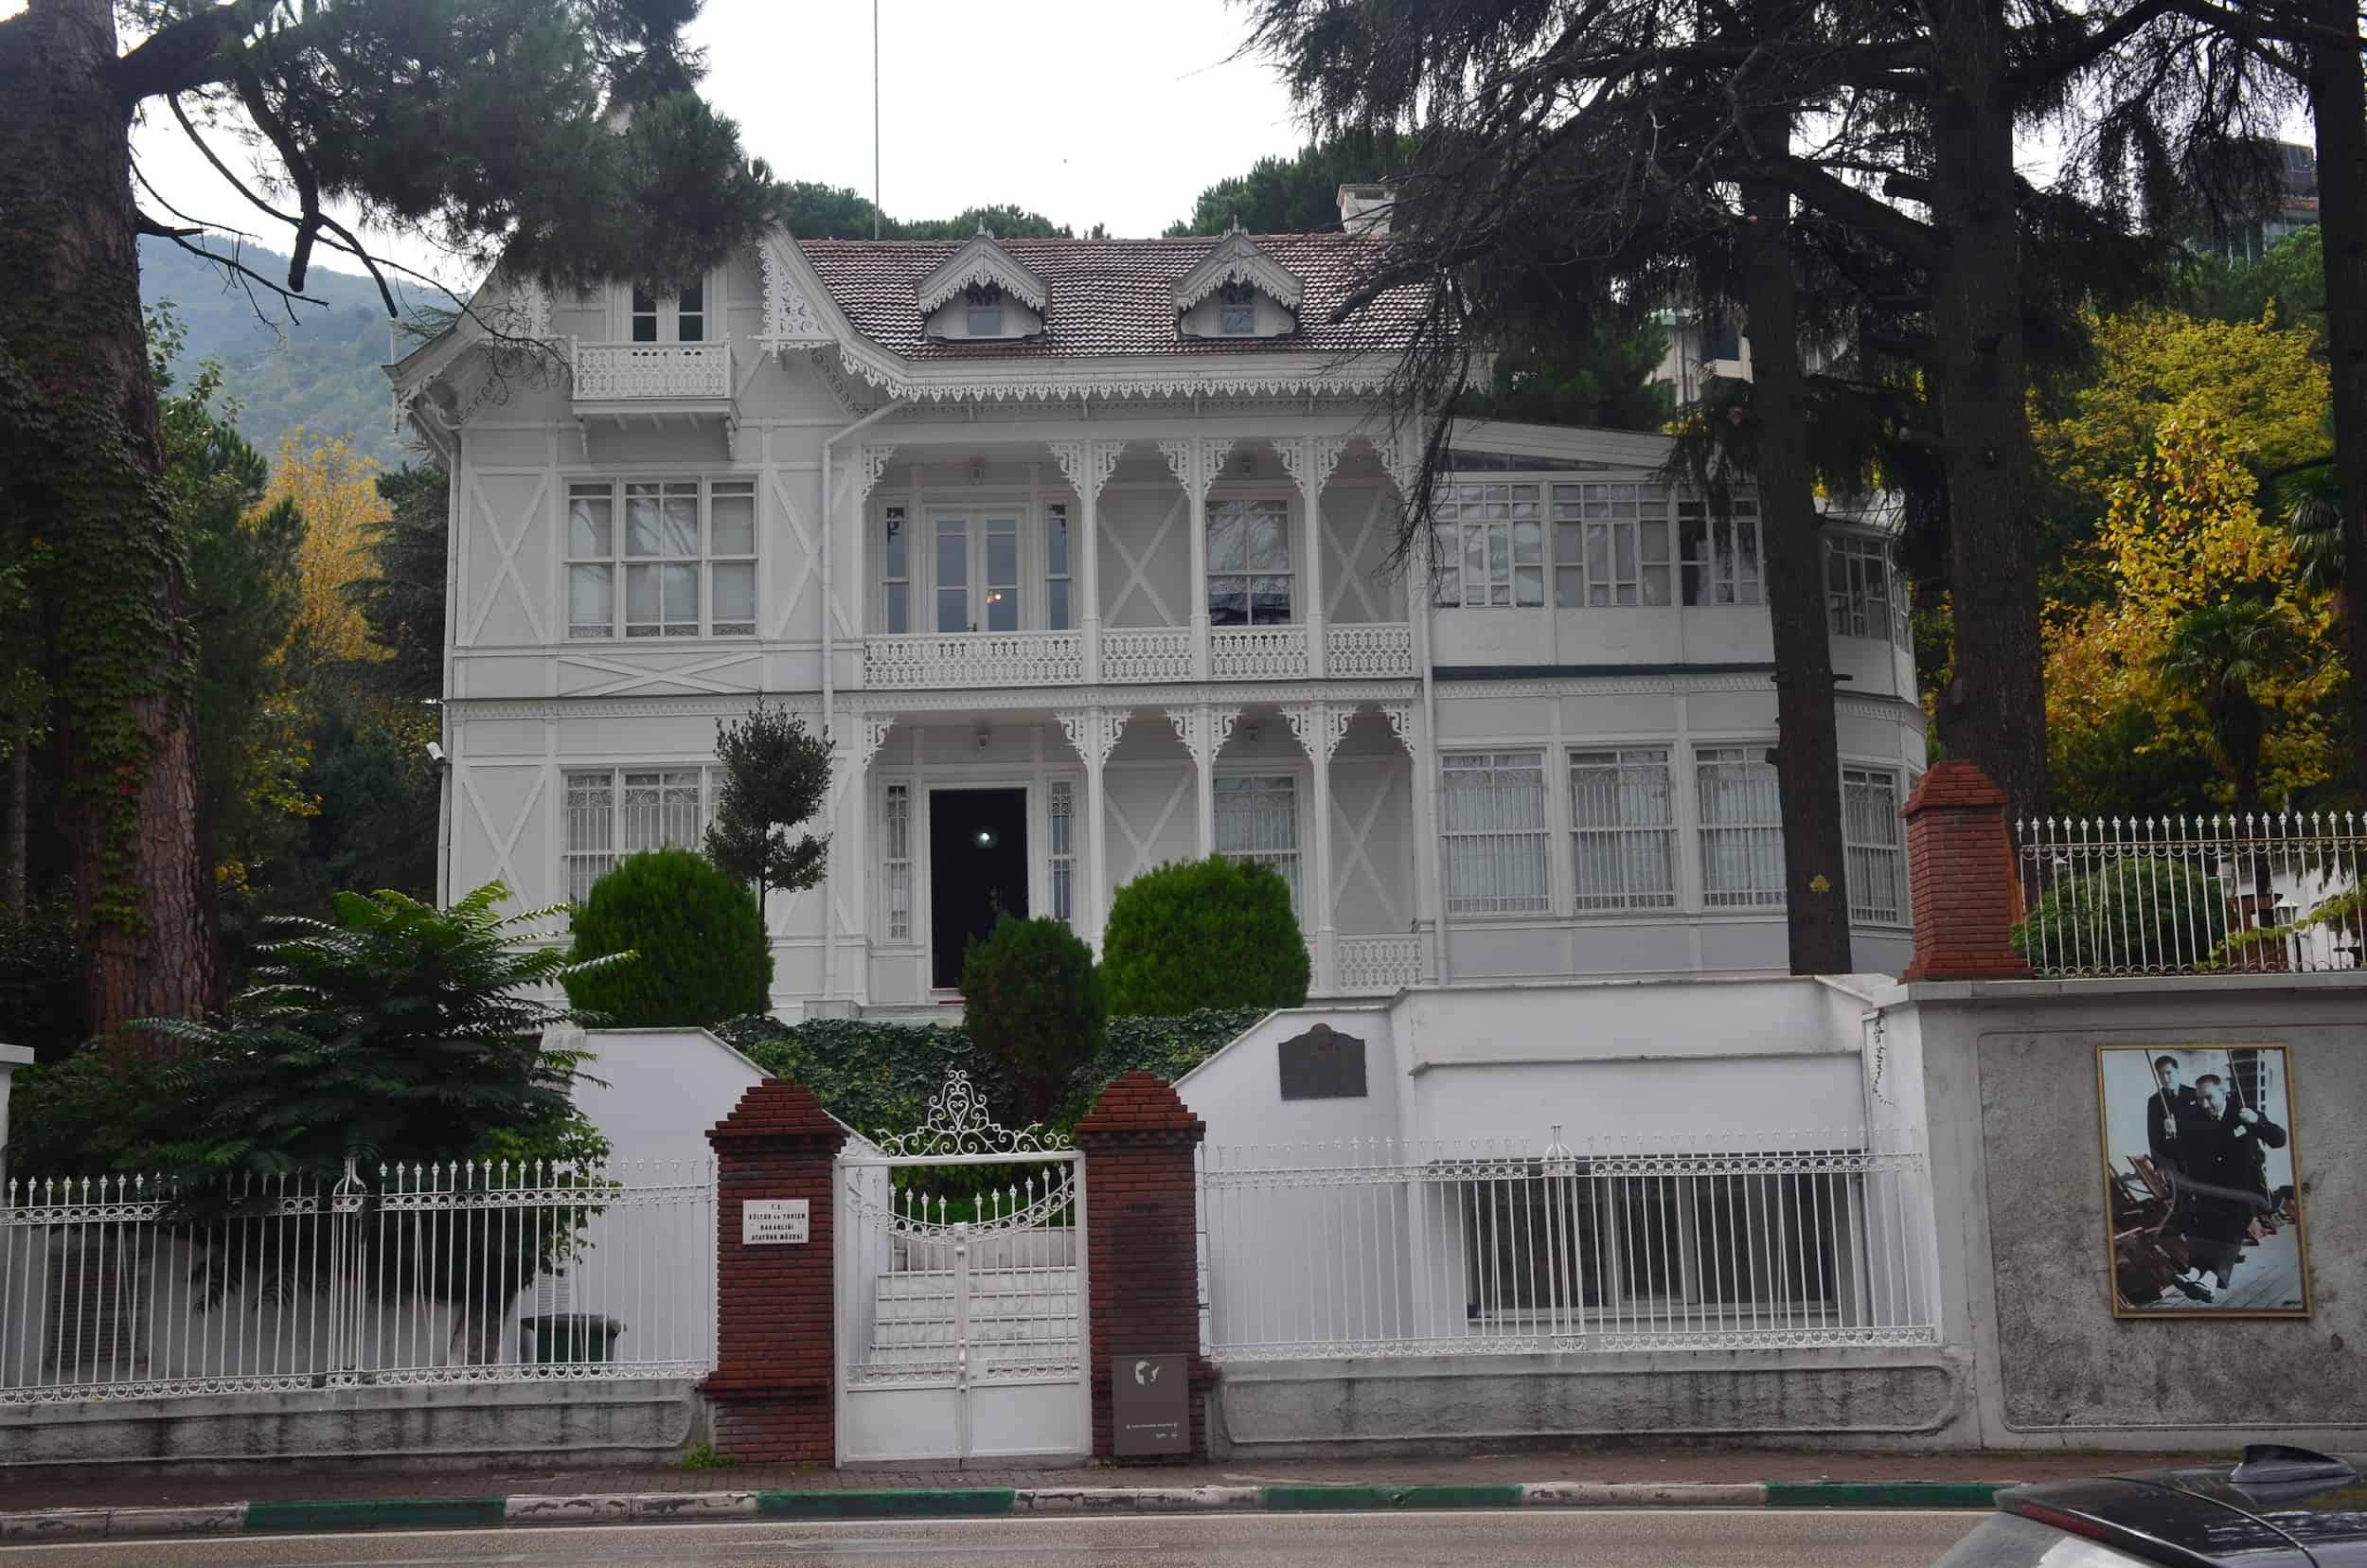 Bursa Atatürk House Museum in Bursa, Turkey